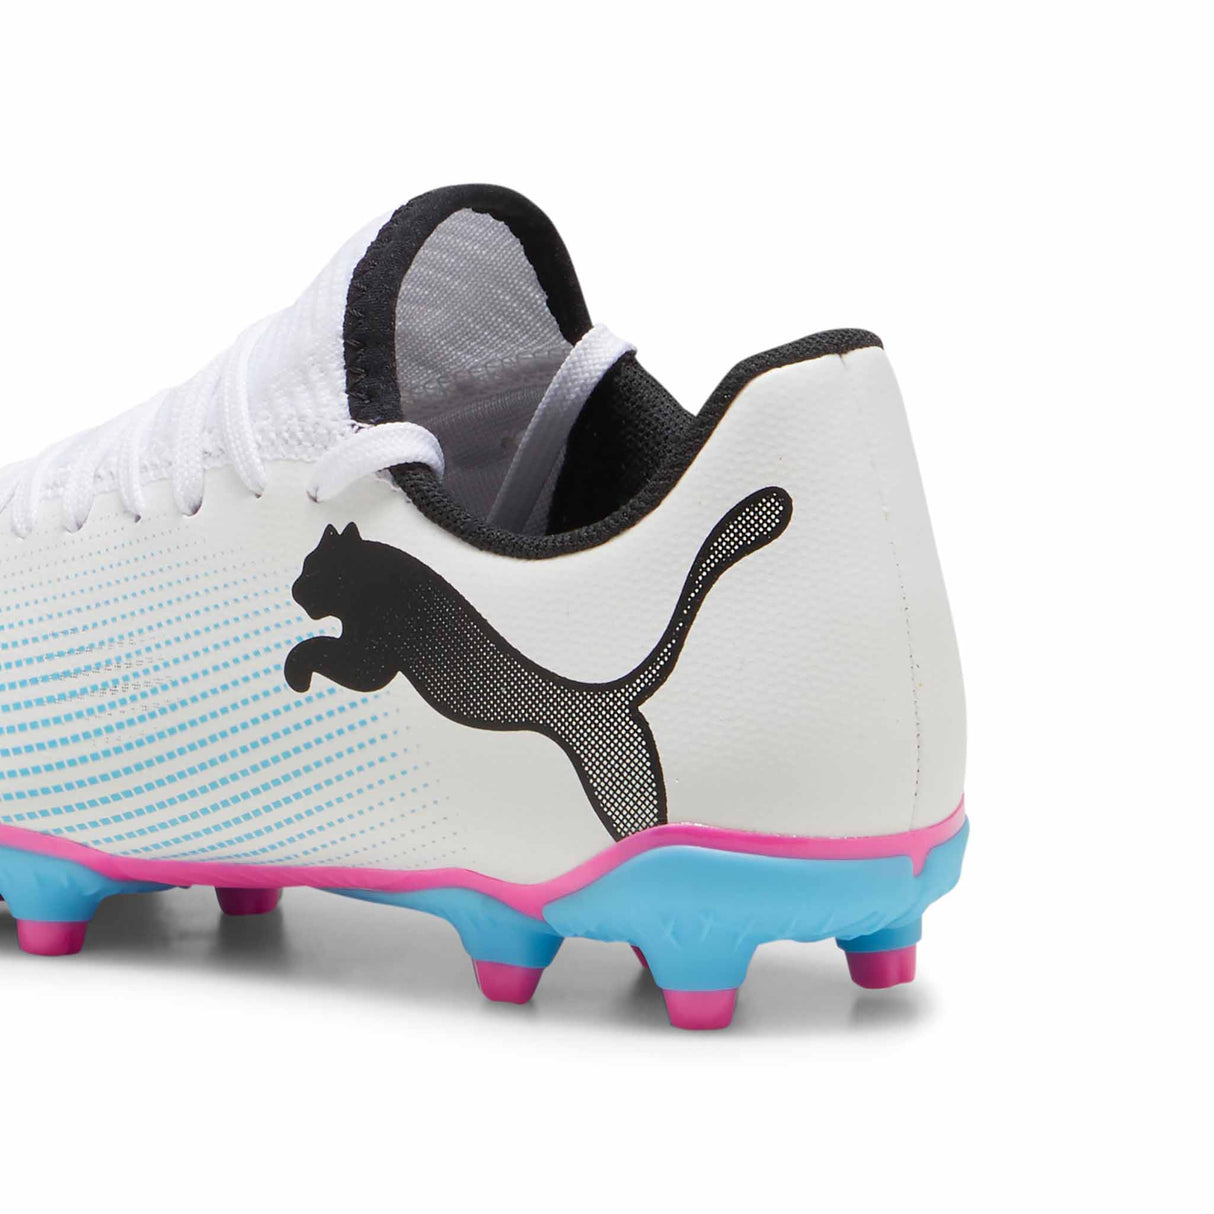 Puma Future 7 Play FG/AG chaussures de soccer à crampons junior - Puma White / Poison Pink / Puma Black